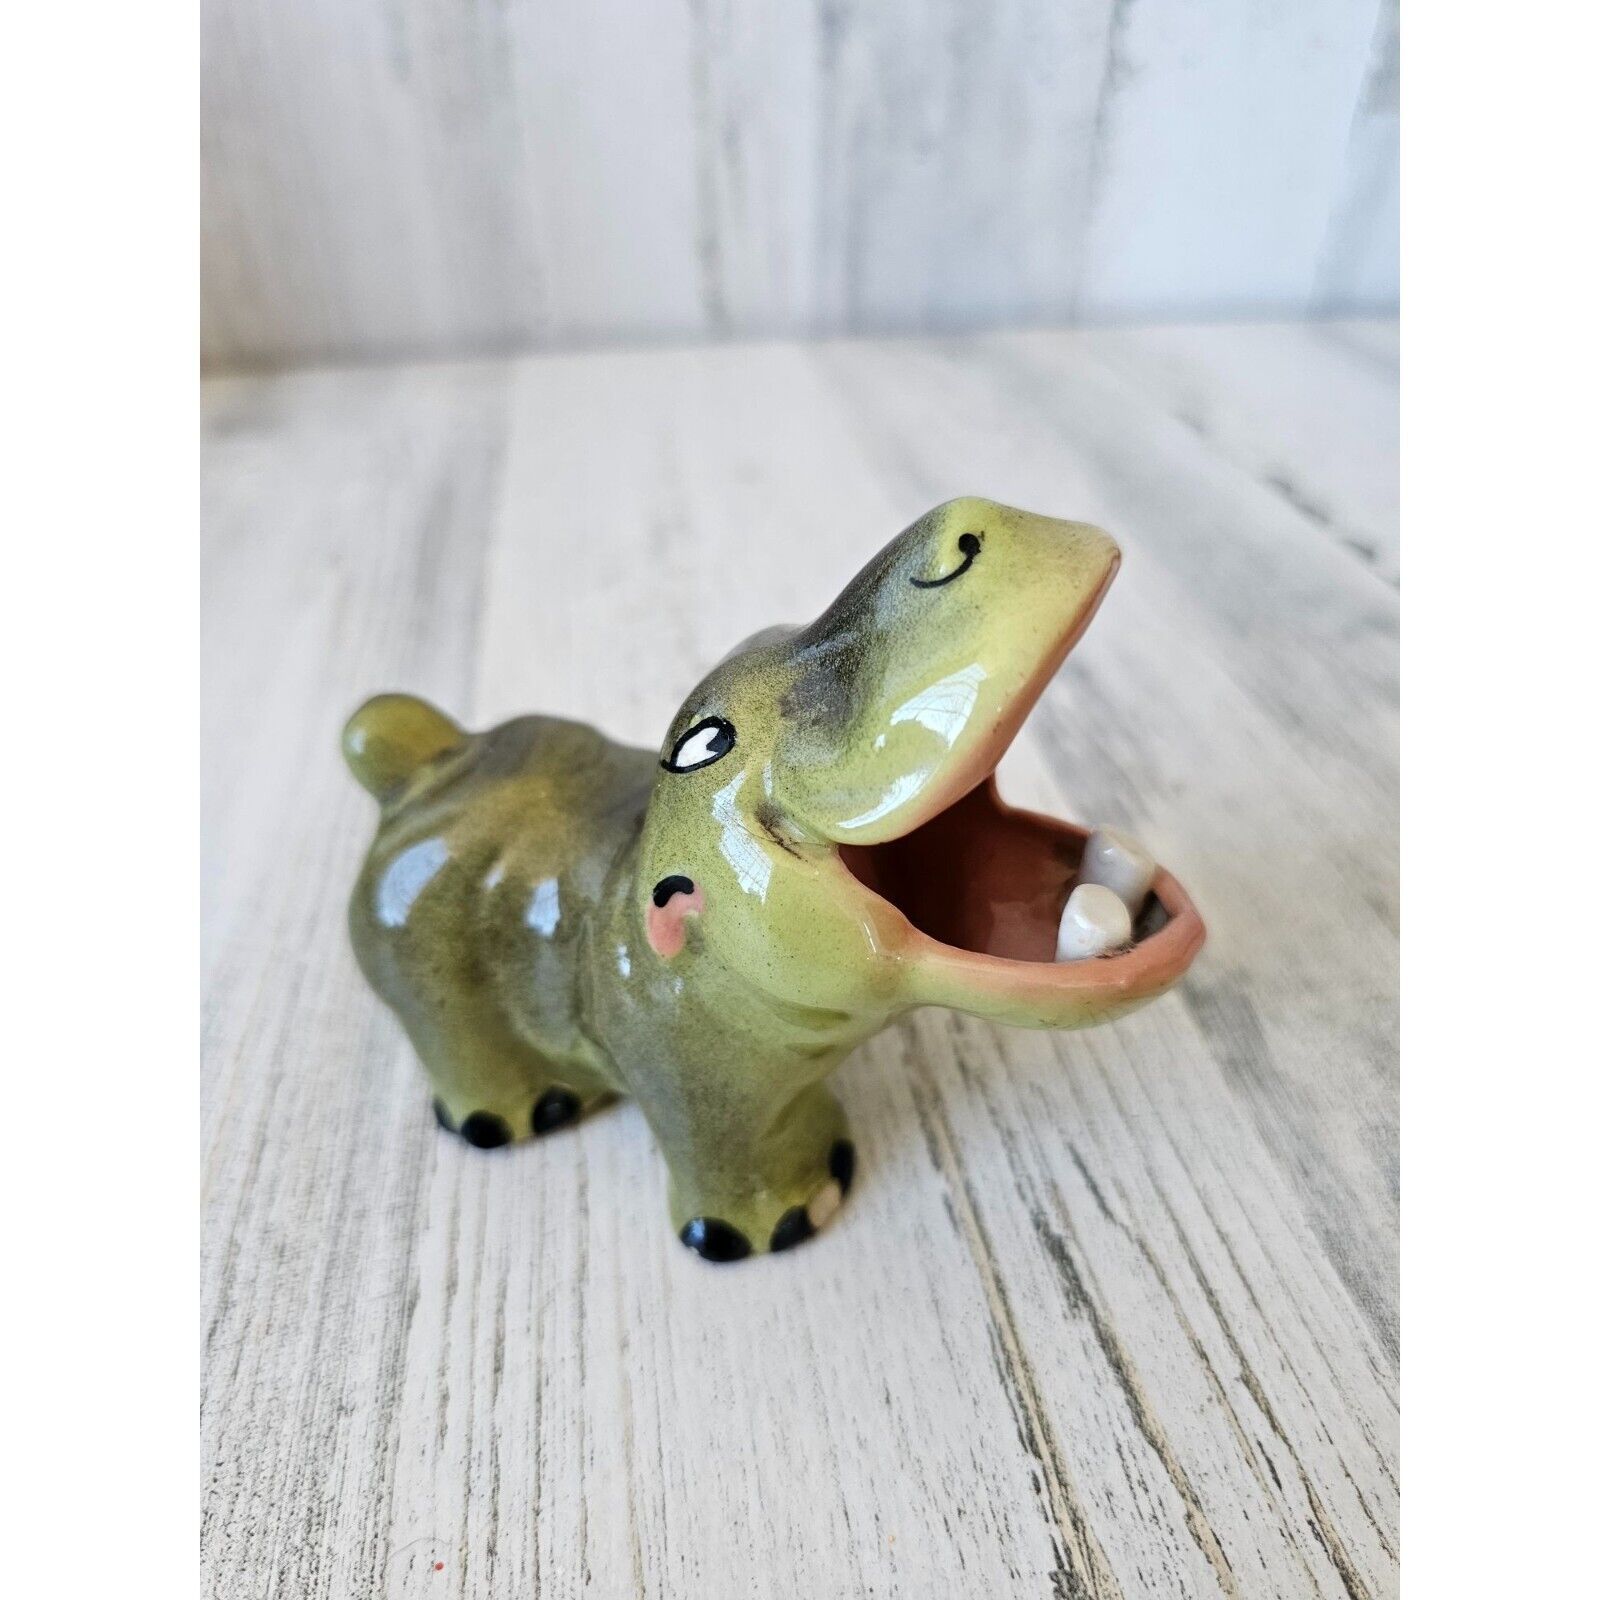 Art studio hippo vintage ceramic figurine unique